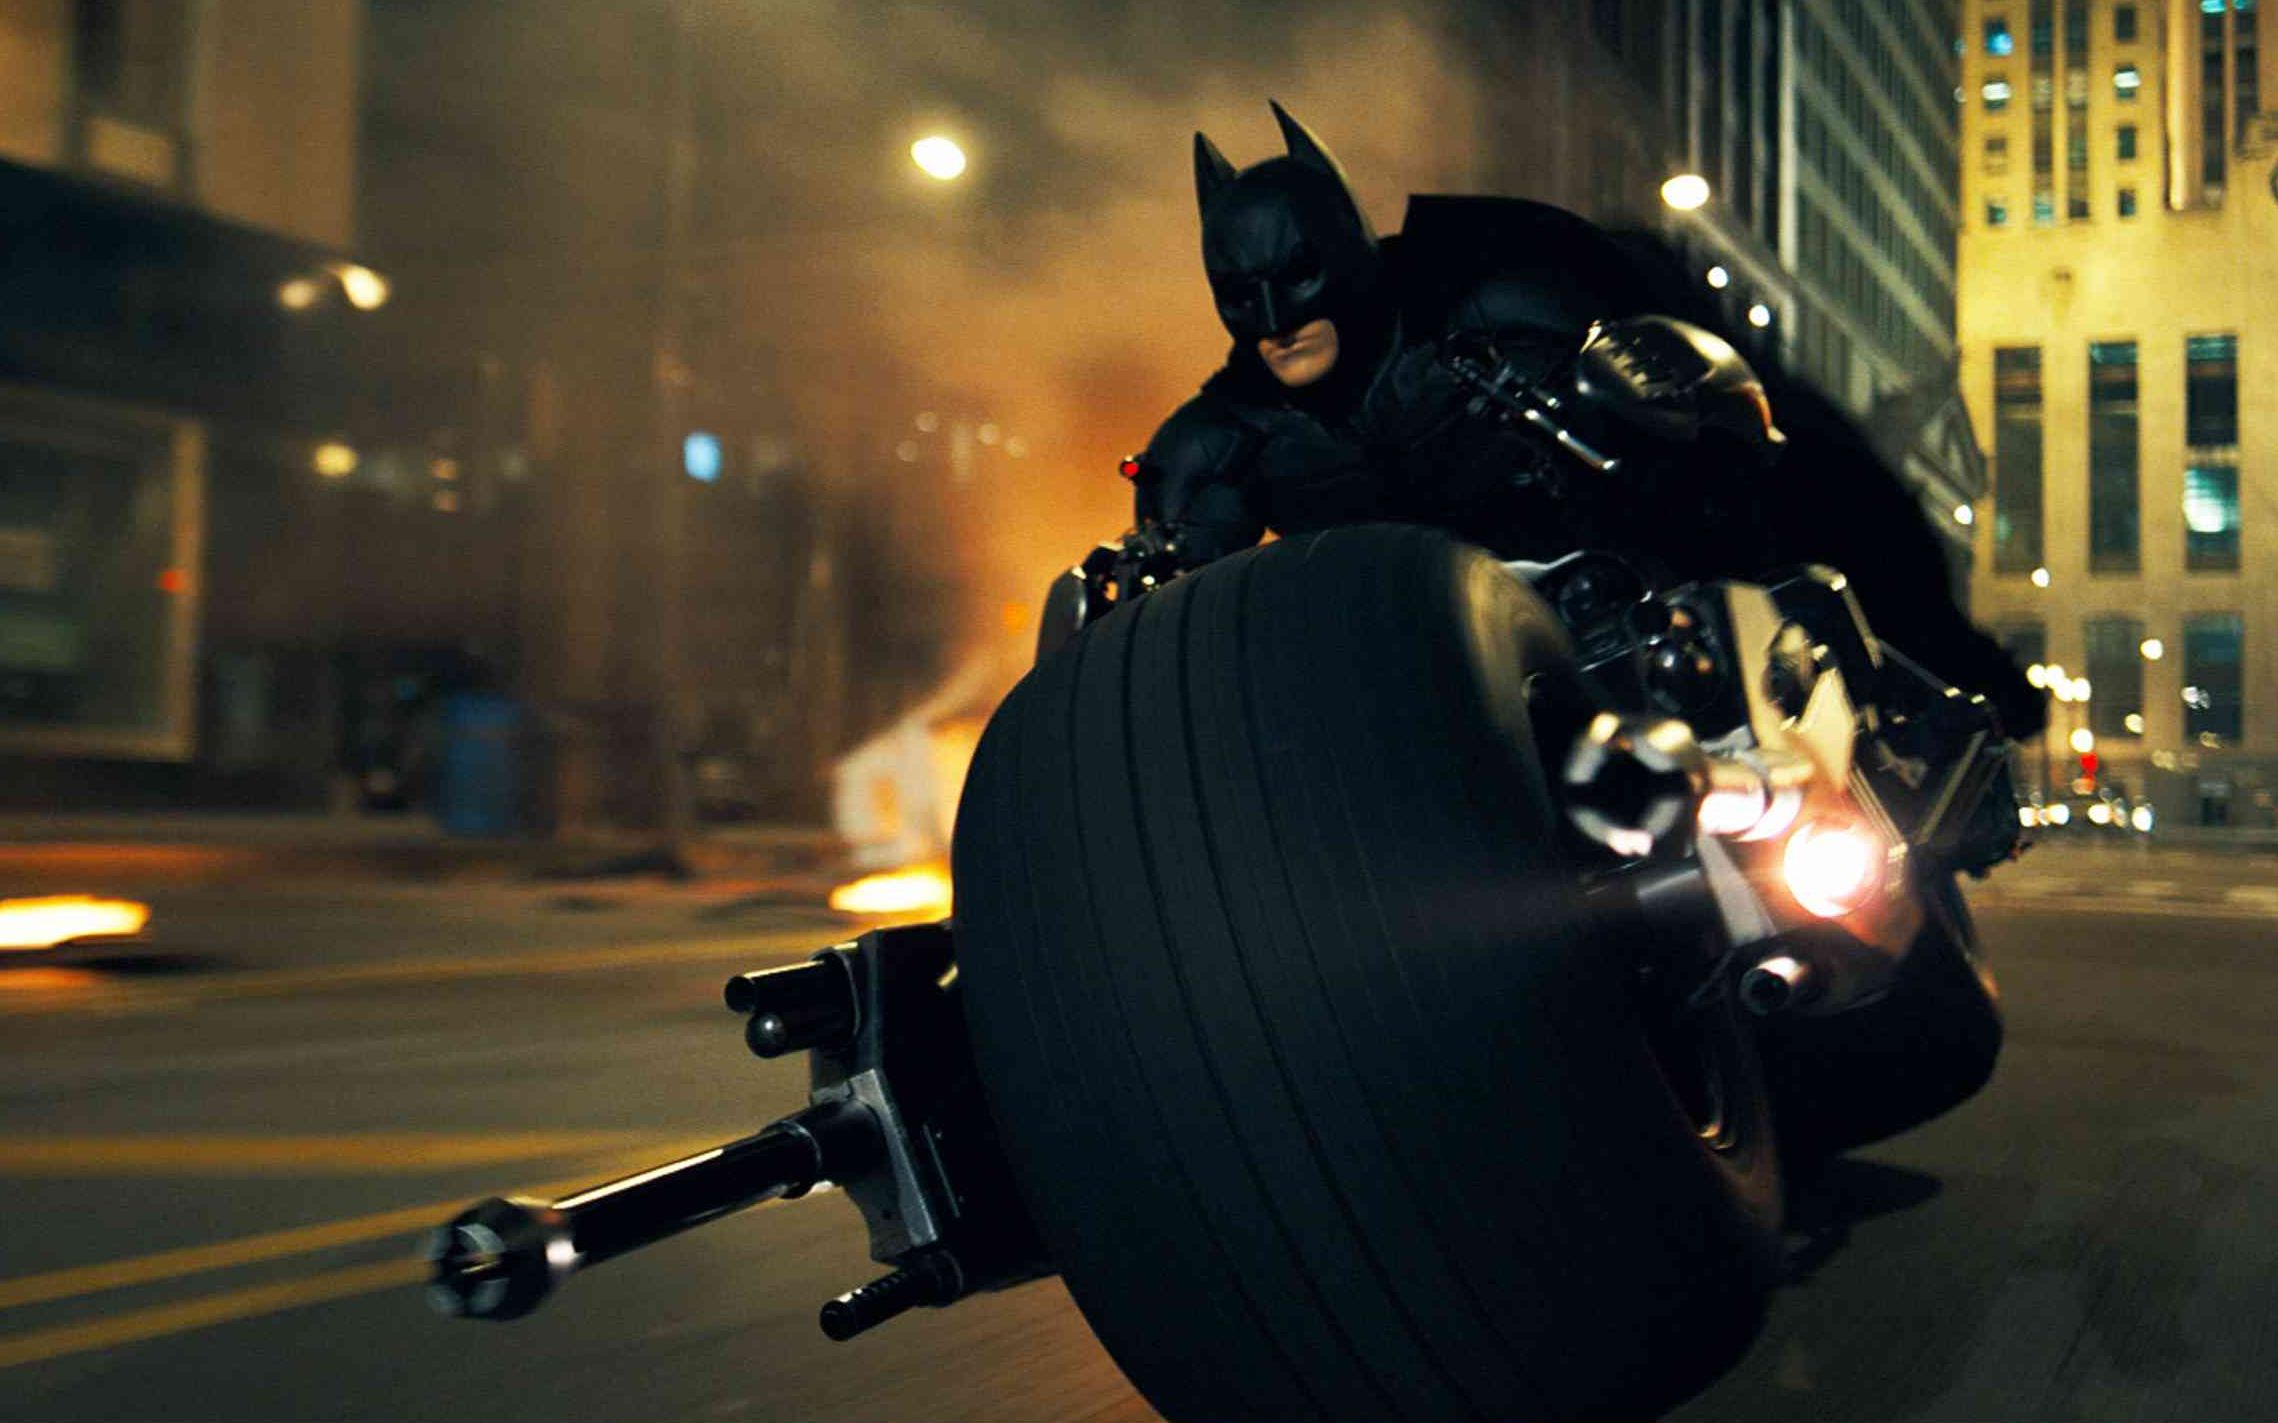 Batman The Dark Knight 蝙蝠侠 黑暗骑士-2012电影高清壁纸预览 | 10wallpaper.com